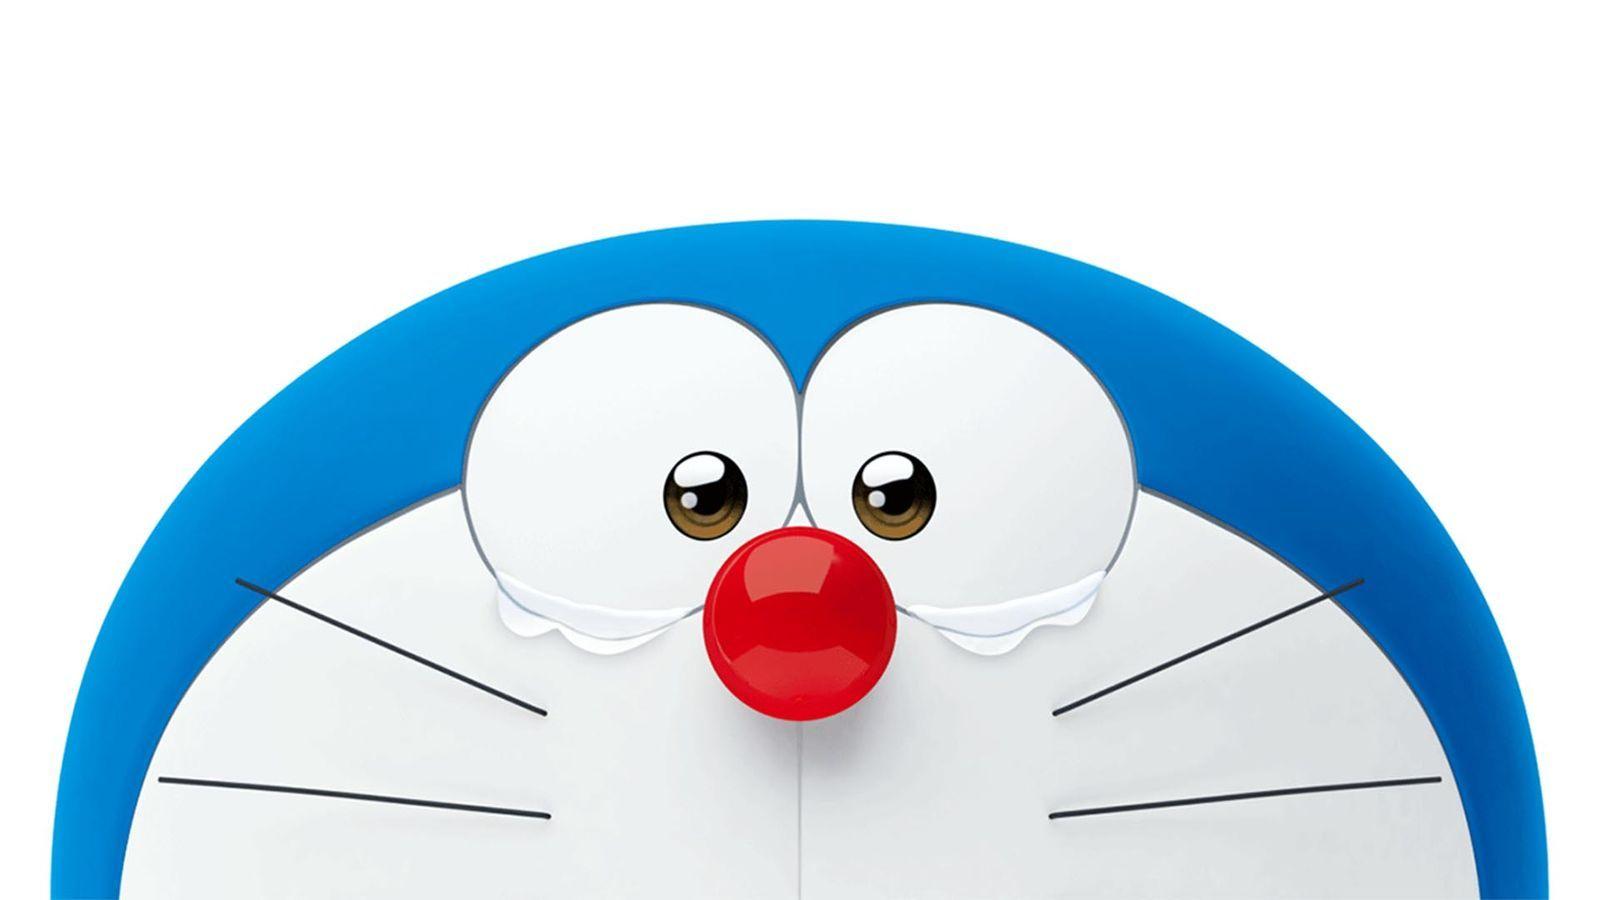 Free download, Doraemon 3D Wallpapers: Truy cập ngay vào trang web để tải xuống hàng loạt những hình nền Doraemon 3D đẹp mắt hoàn toàn miễn phí. Thỏa sức lựa chọn và thay đổi hình nền để tạo nên những trang trí độc đáo cho màn hình điện thoại hoặc máy tính của bạn.